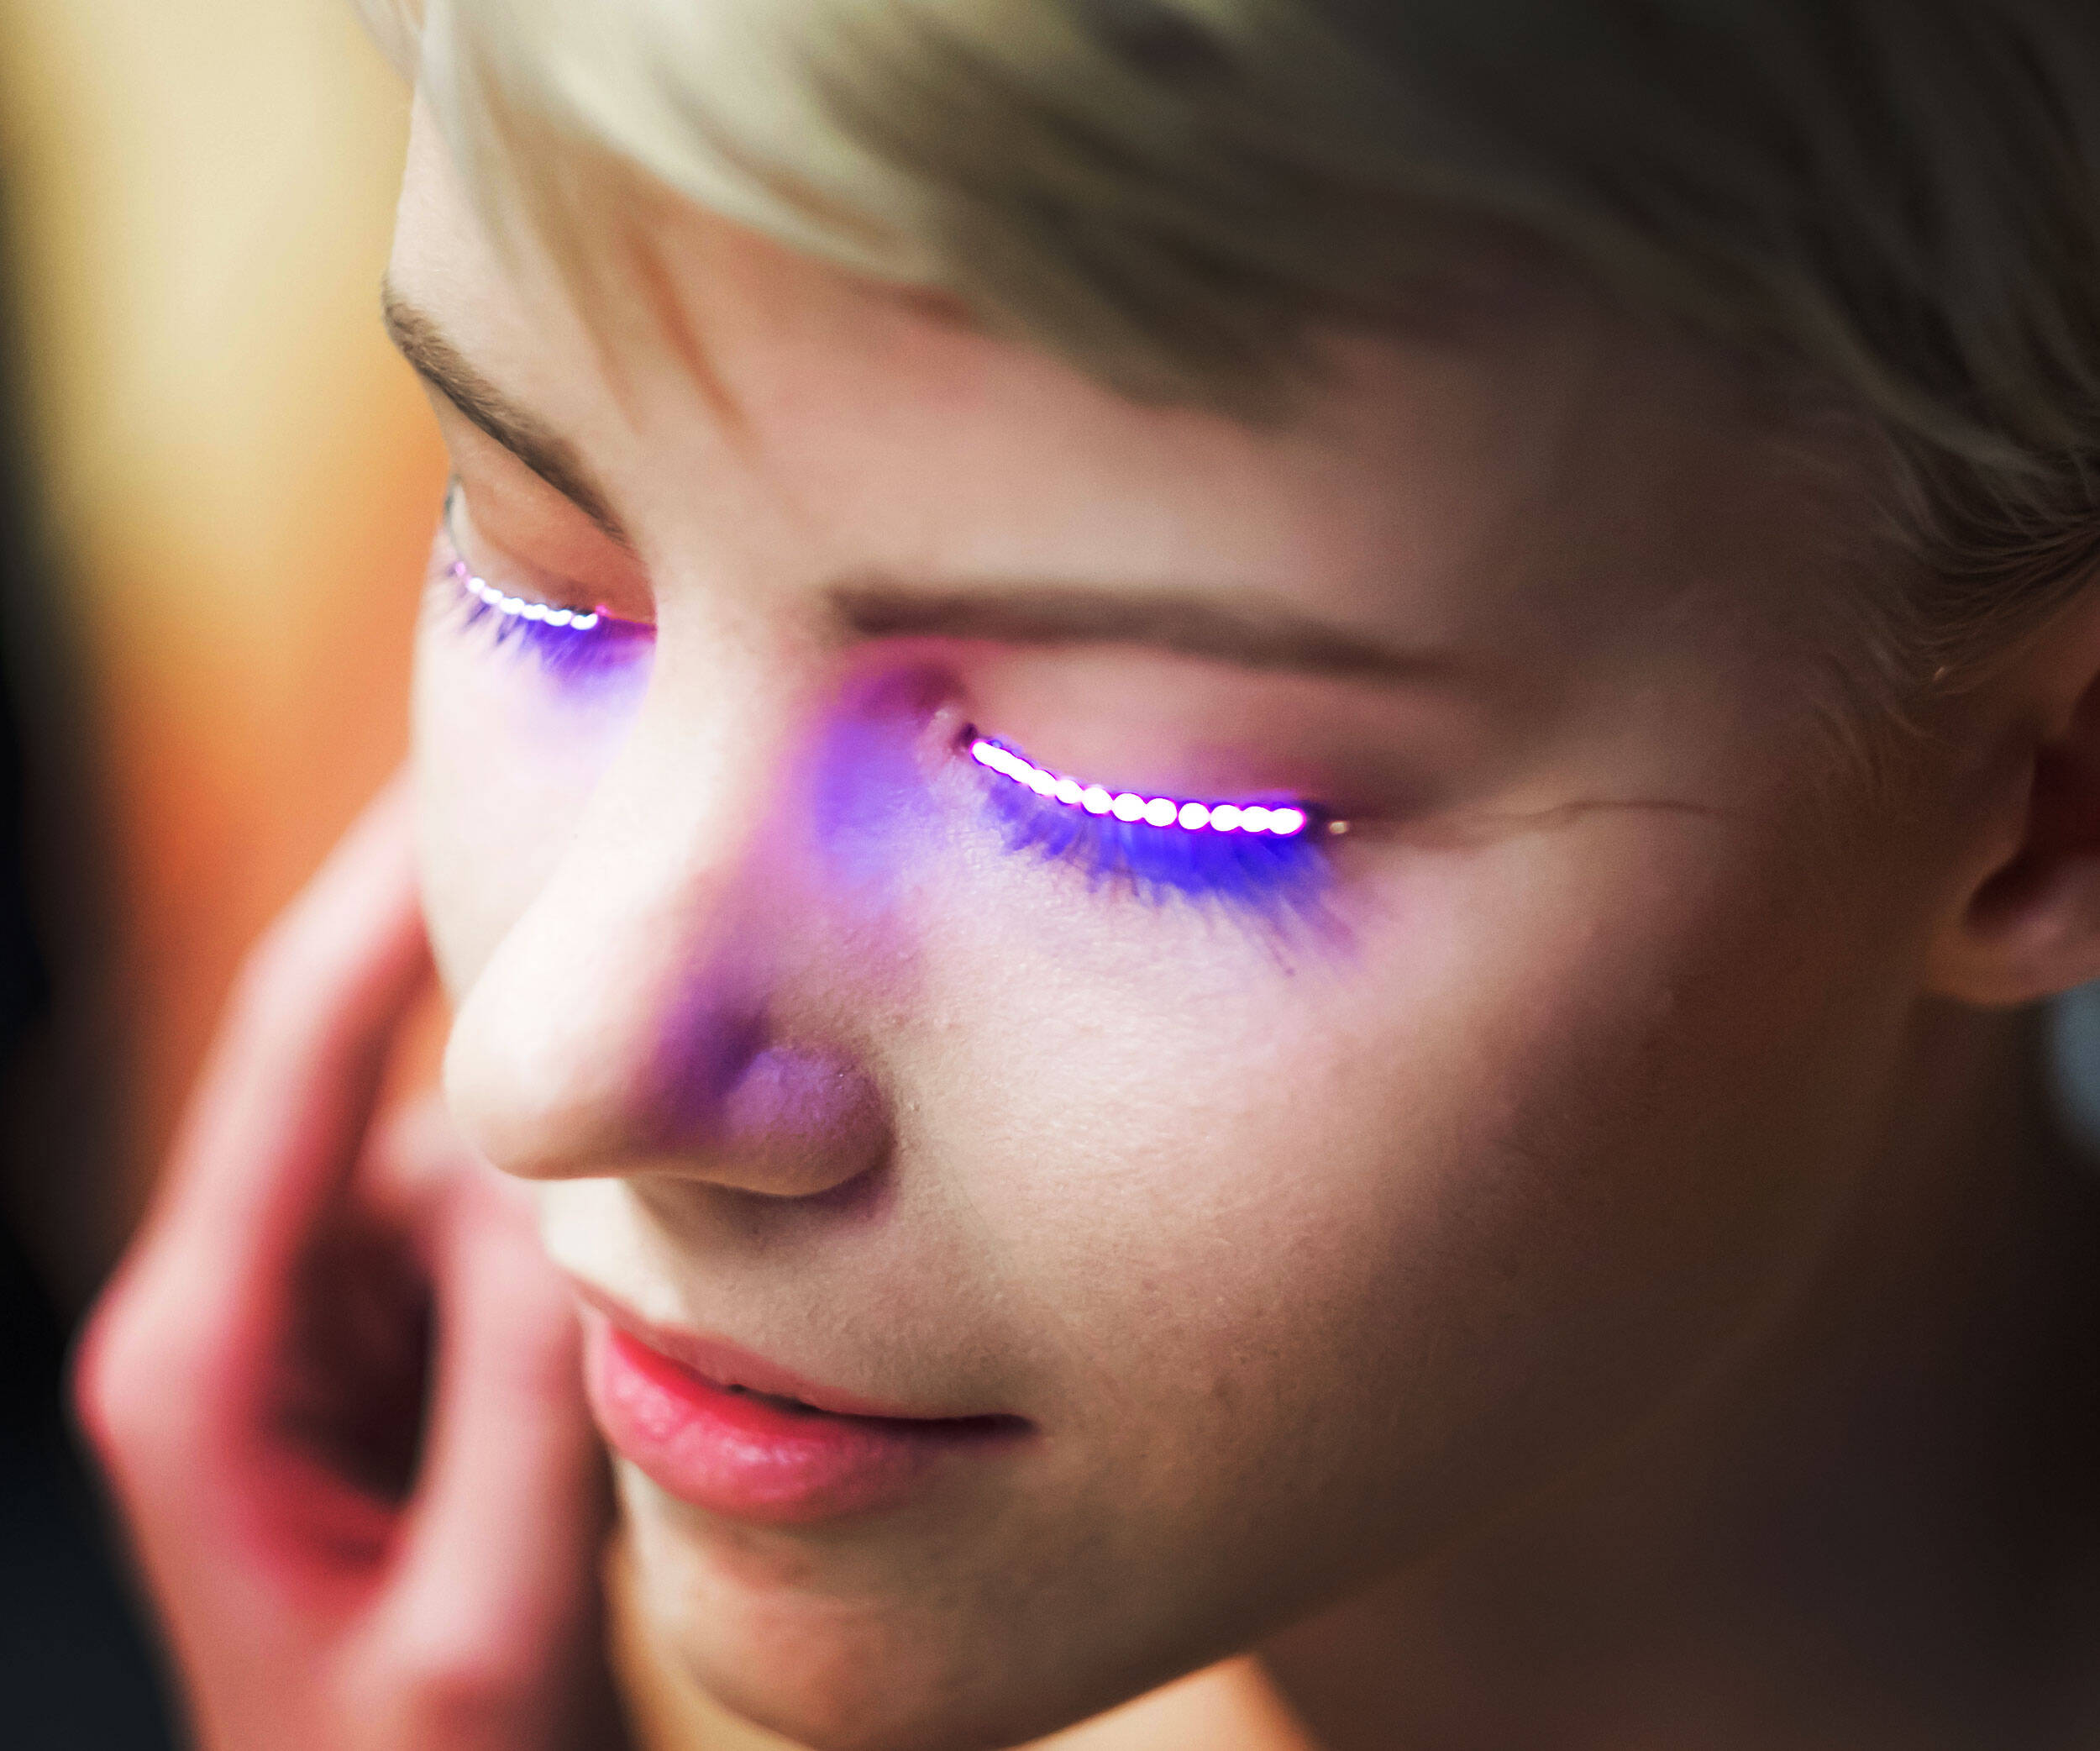 Interactive LED Eyelashes - coolthings.us